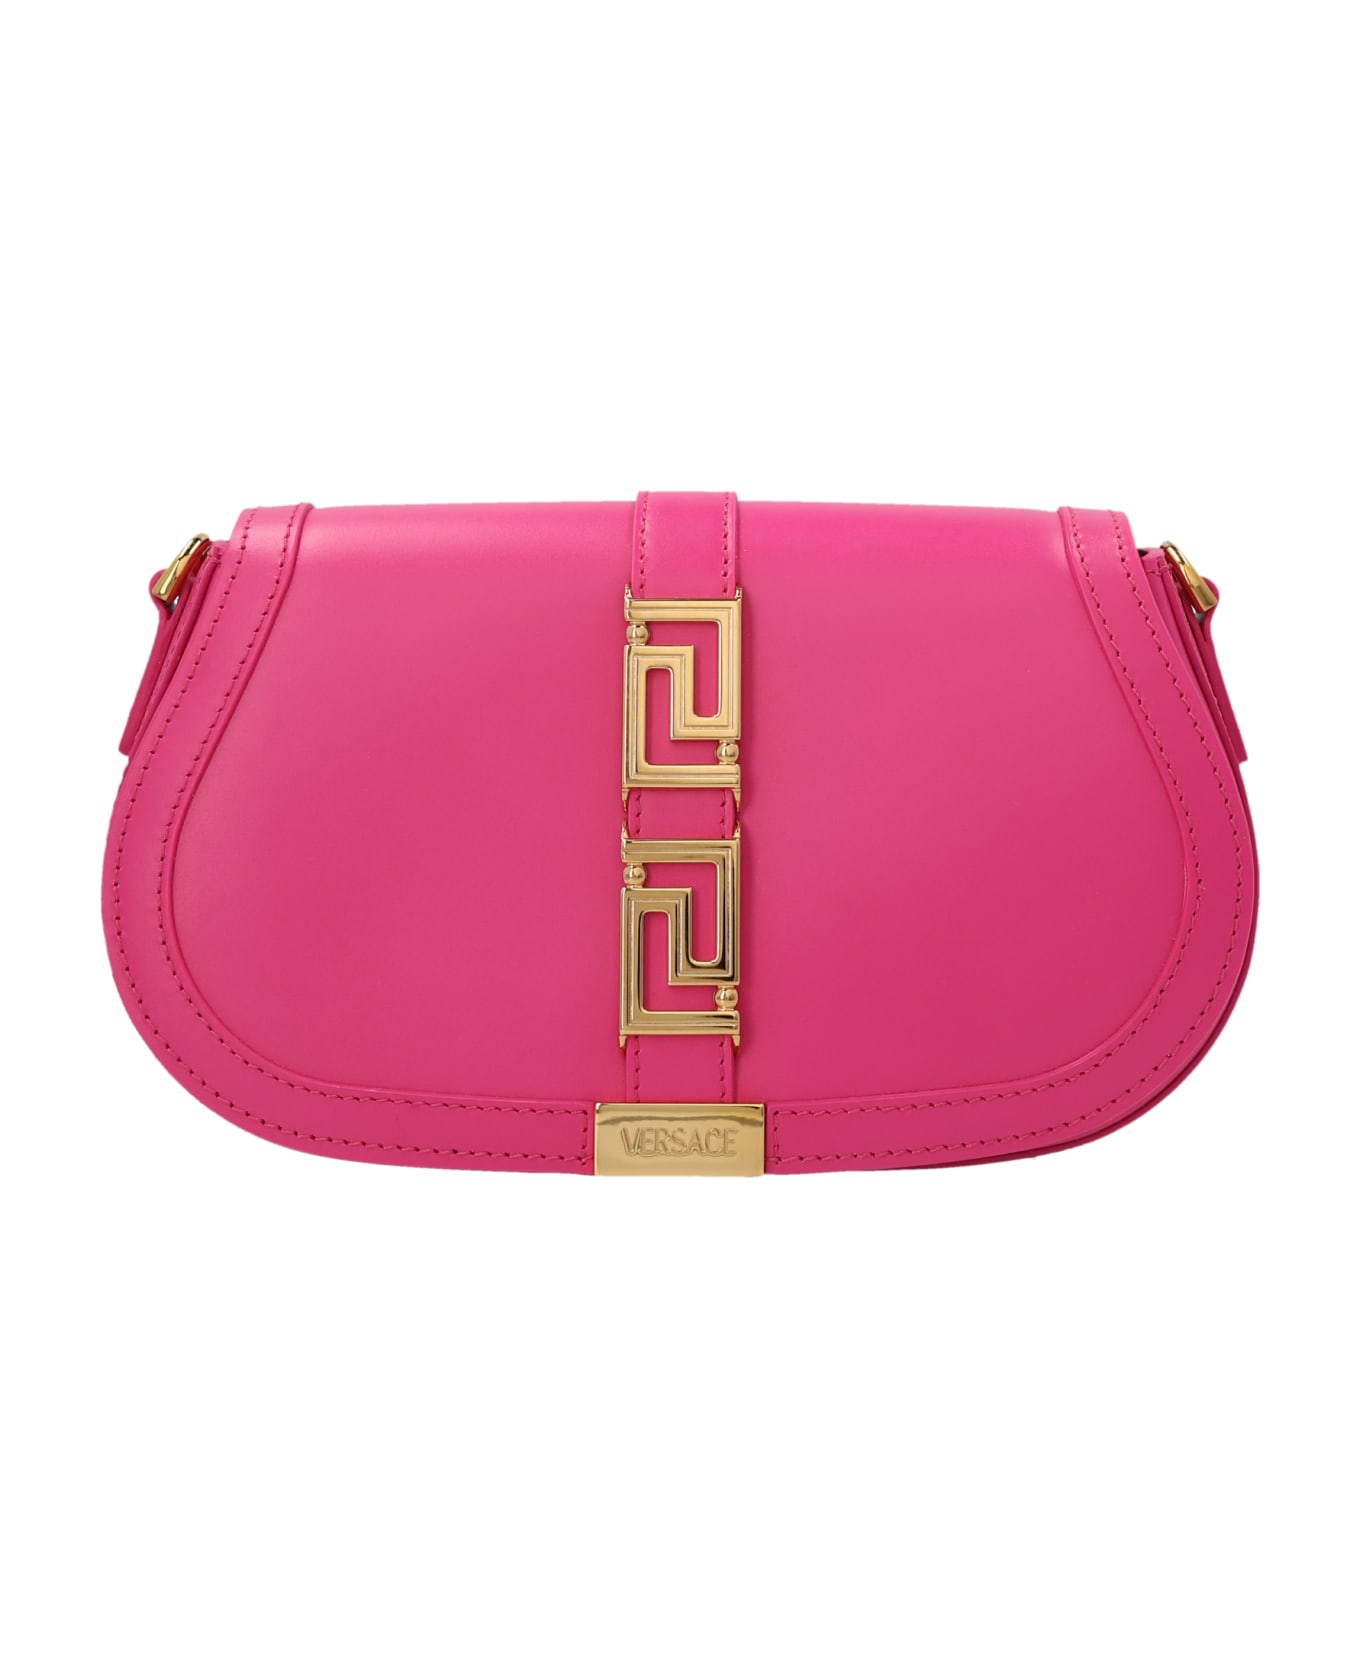 Versace Greca Goddess Shoulder Bag - Pink トートバッグ